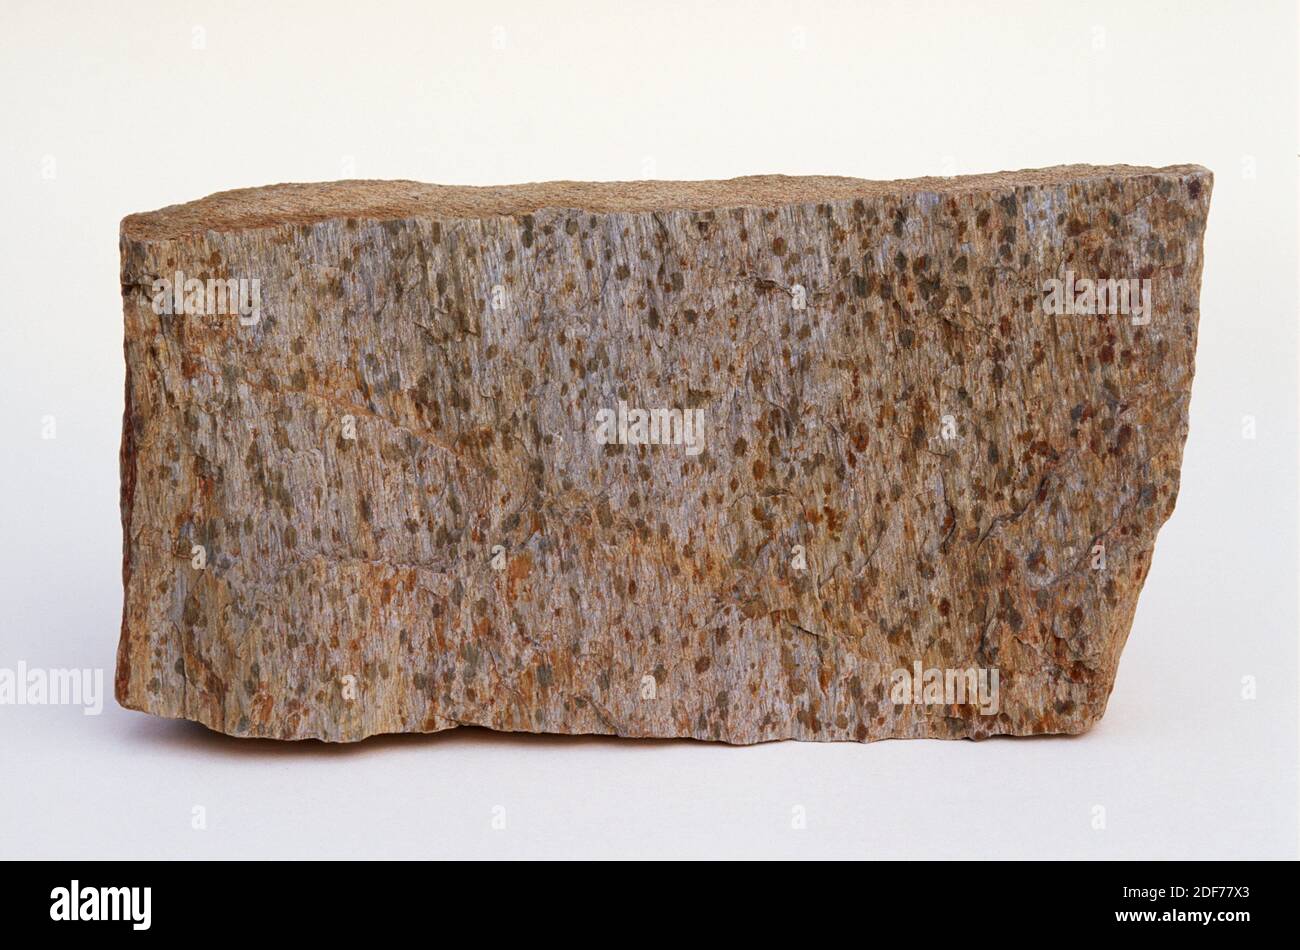 Gefleckter Schiefer ist ein metamorphes Gestein, das durch die Kontaktmetamorphose entstanden ist. Probe. Stockfoto